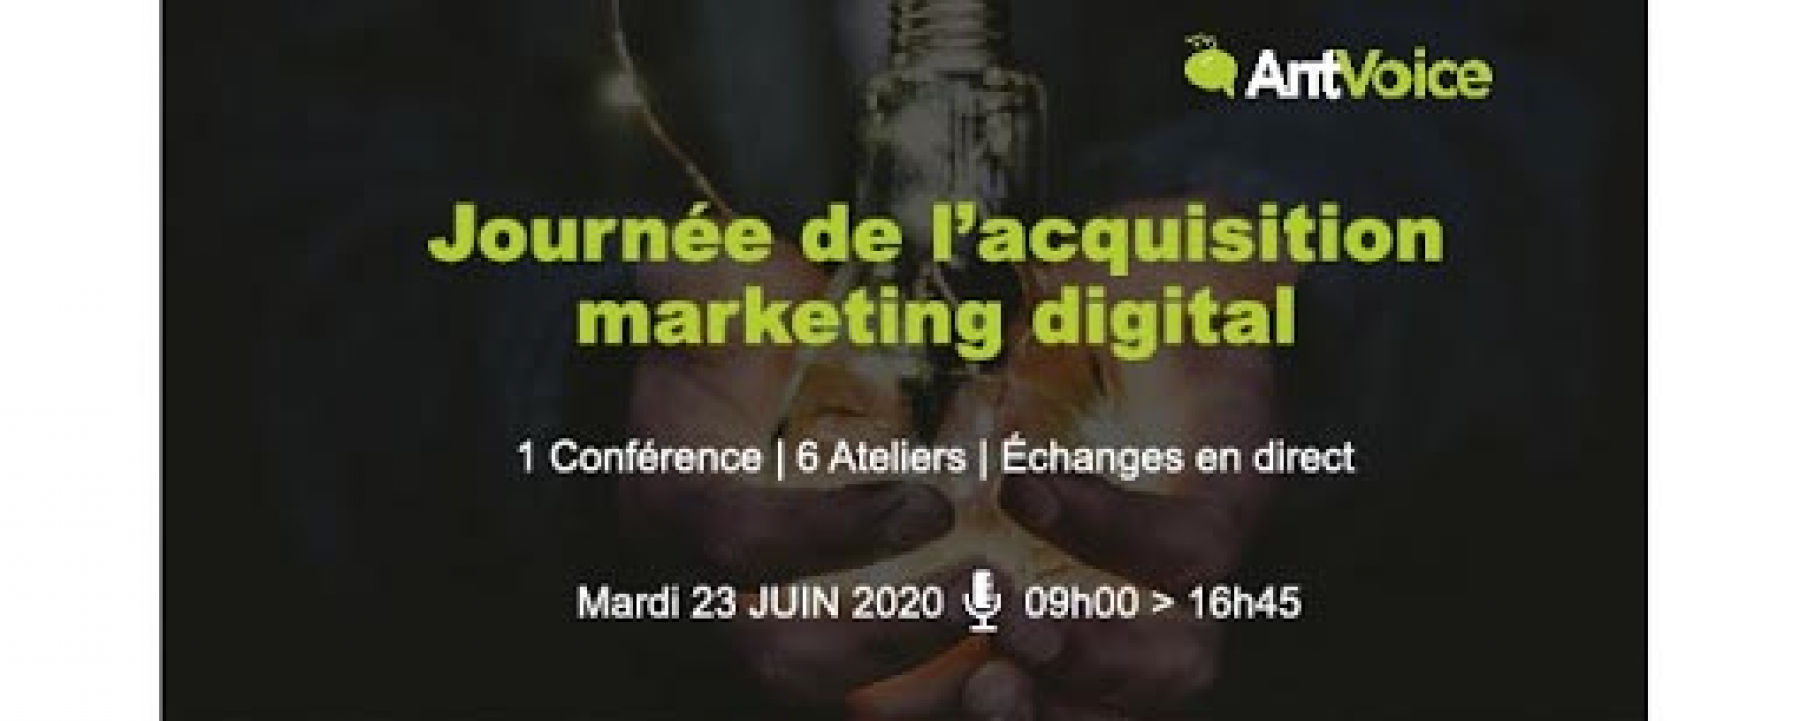 Webinar Journée de l'Acquisition Marketing Digital, le 23 juin 2020, organisé par Ratecard et AntVoice 